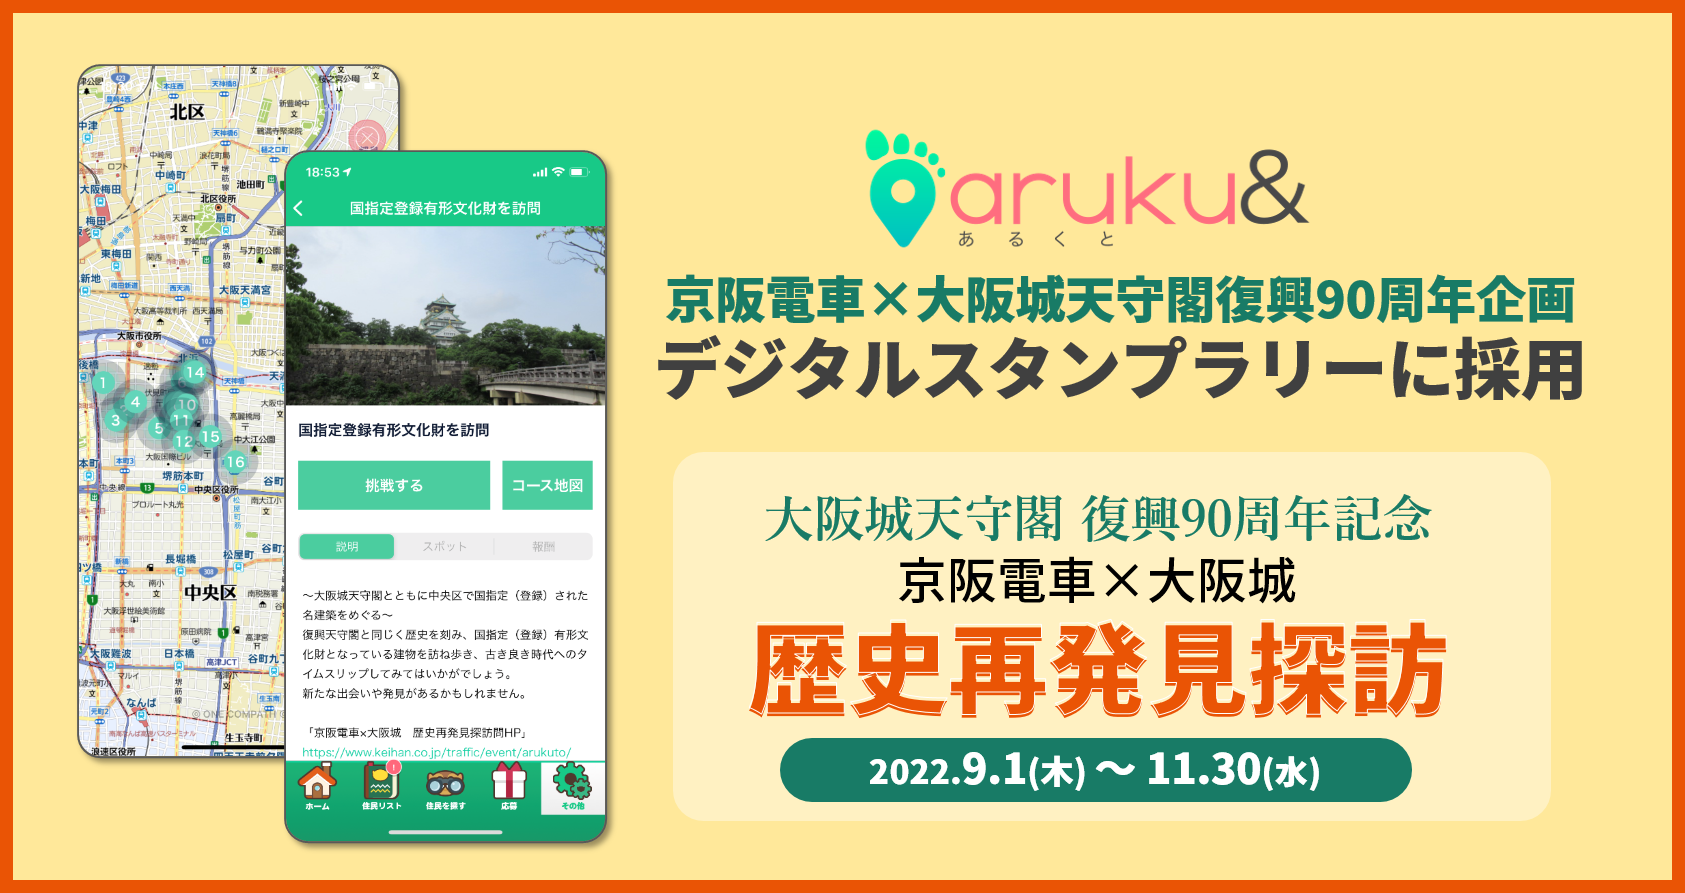 ウォーキングアプリ「aruku&」、京阪電車×大阪城天守閣復興90周年 コラボレーション企画 デ…